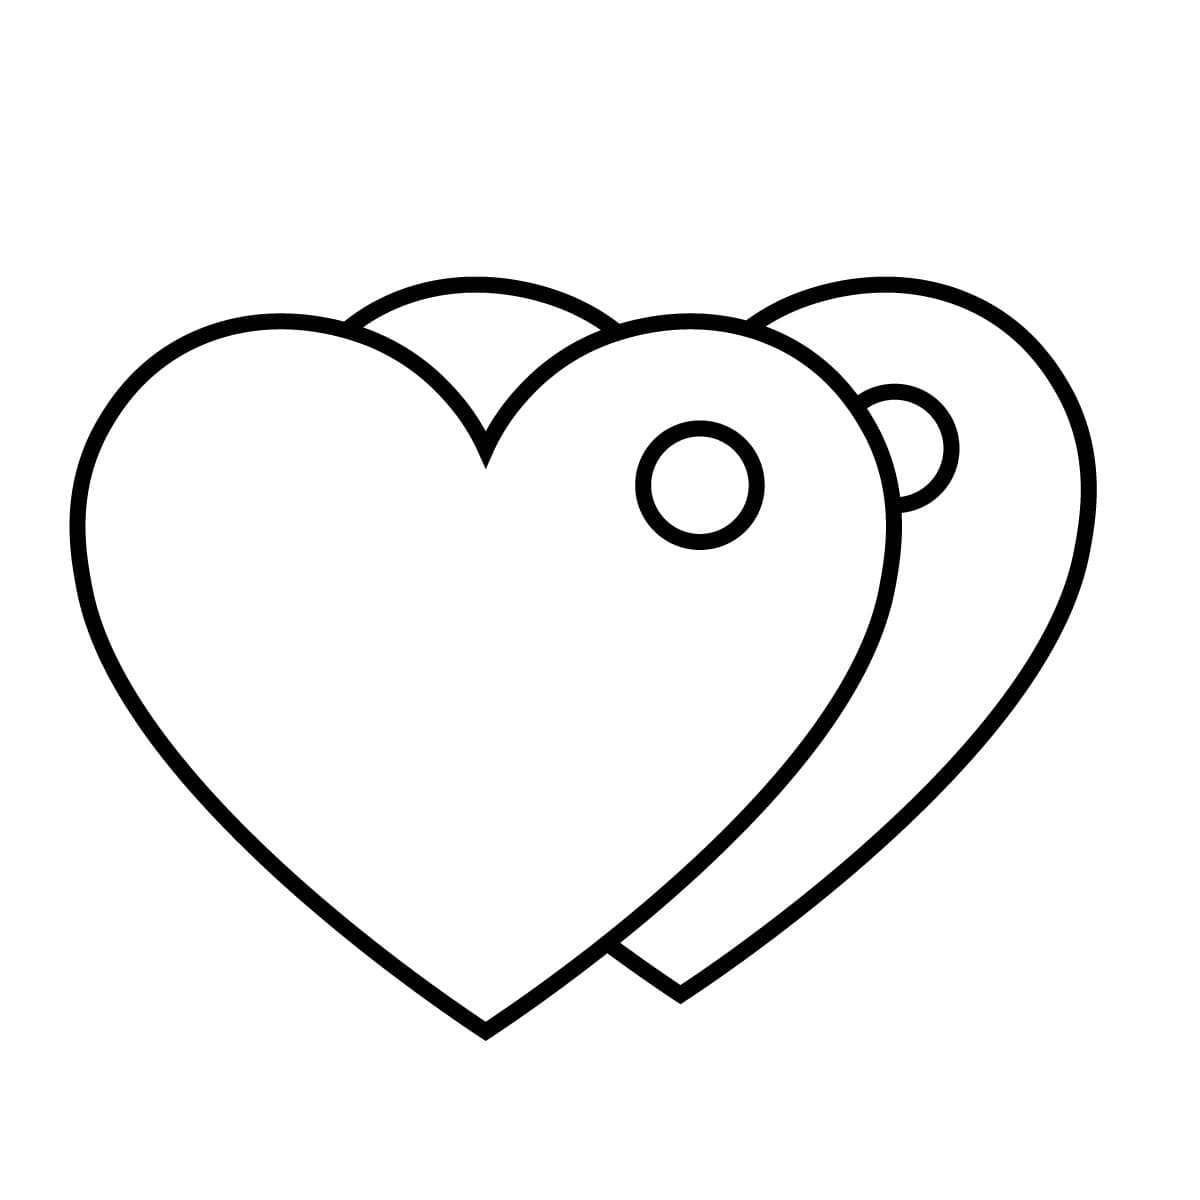 Dibujo de corazón para colorear e imprimir - Dibujos y colores